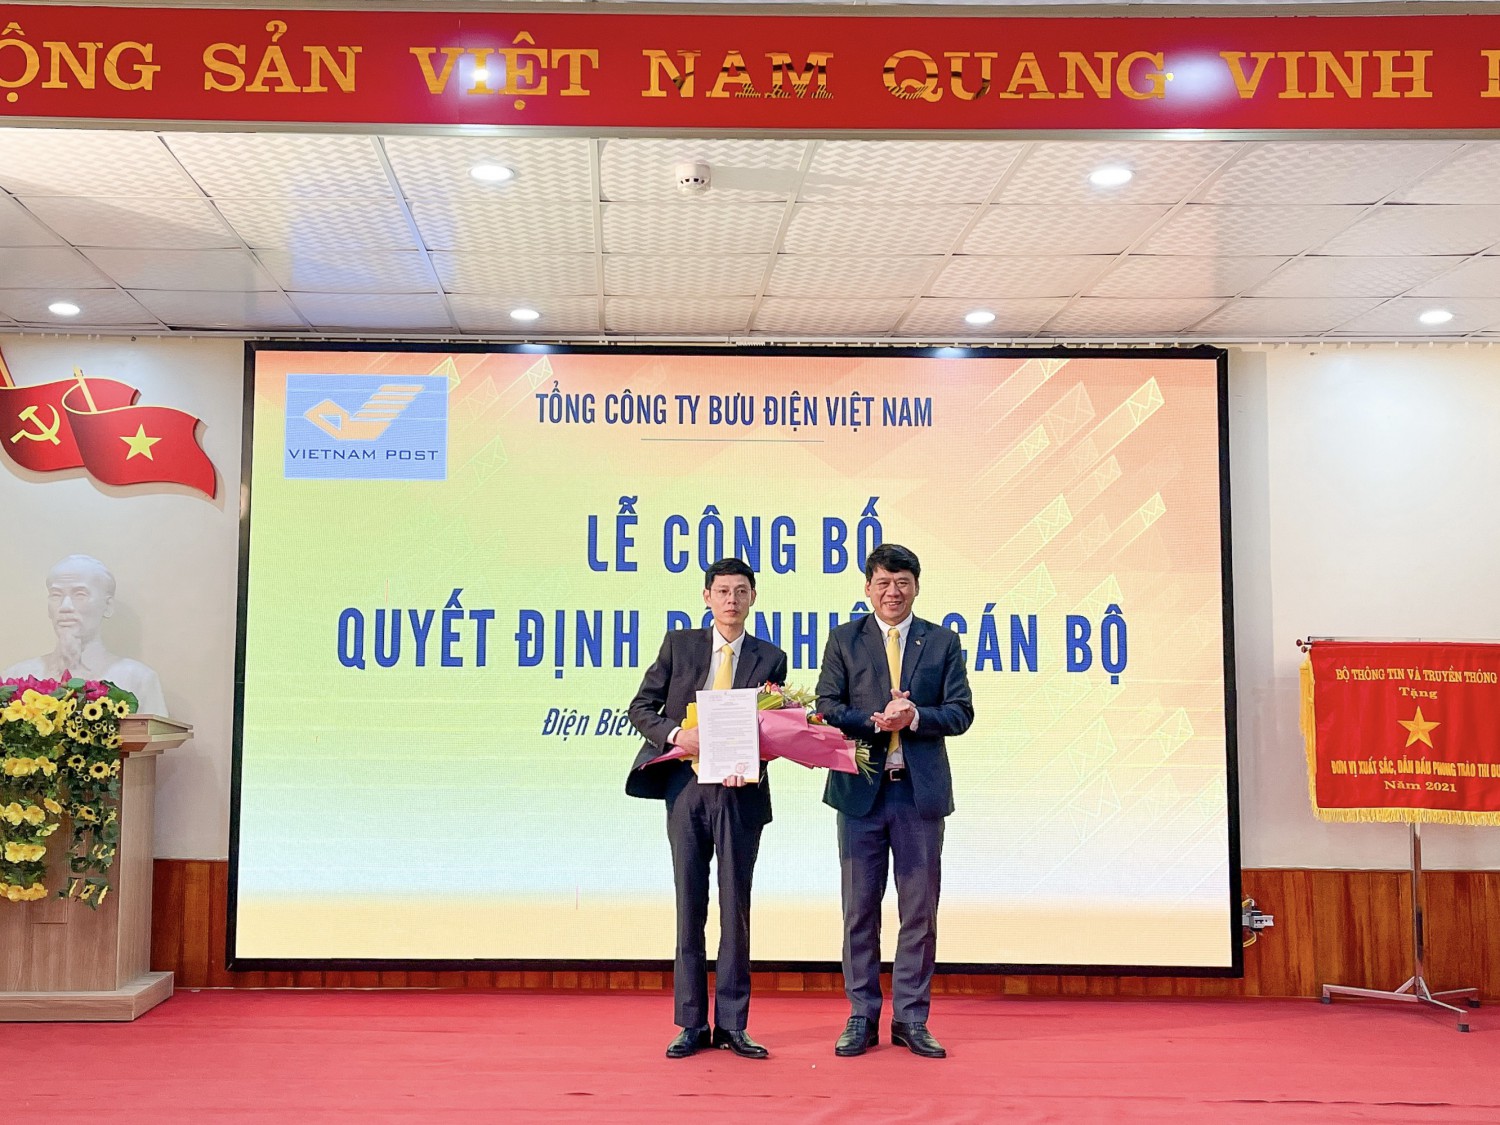 Bưu điện tỉnh Điện Biên tổ chức Lễ công bố và trao quyết định bổ nhiệm Giám đốc Bưu điện tỉnh